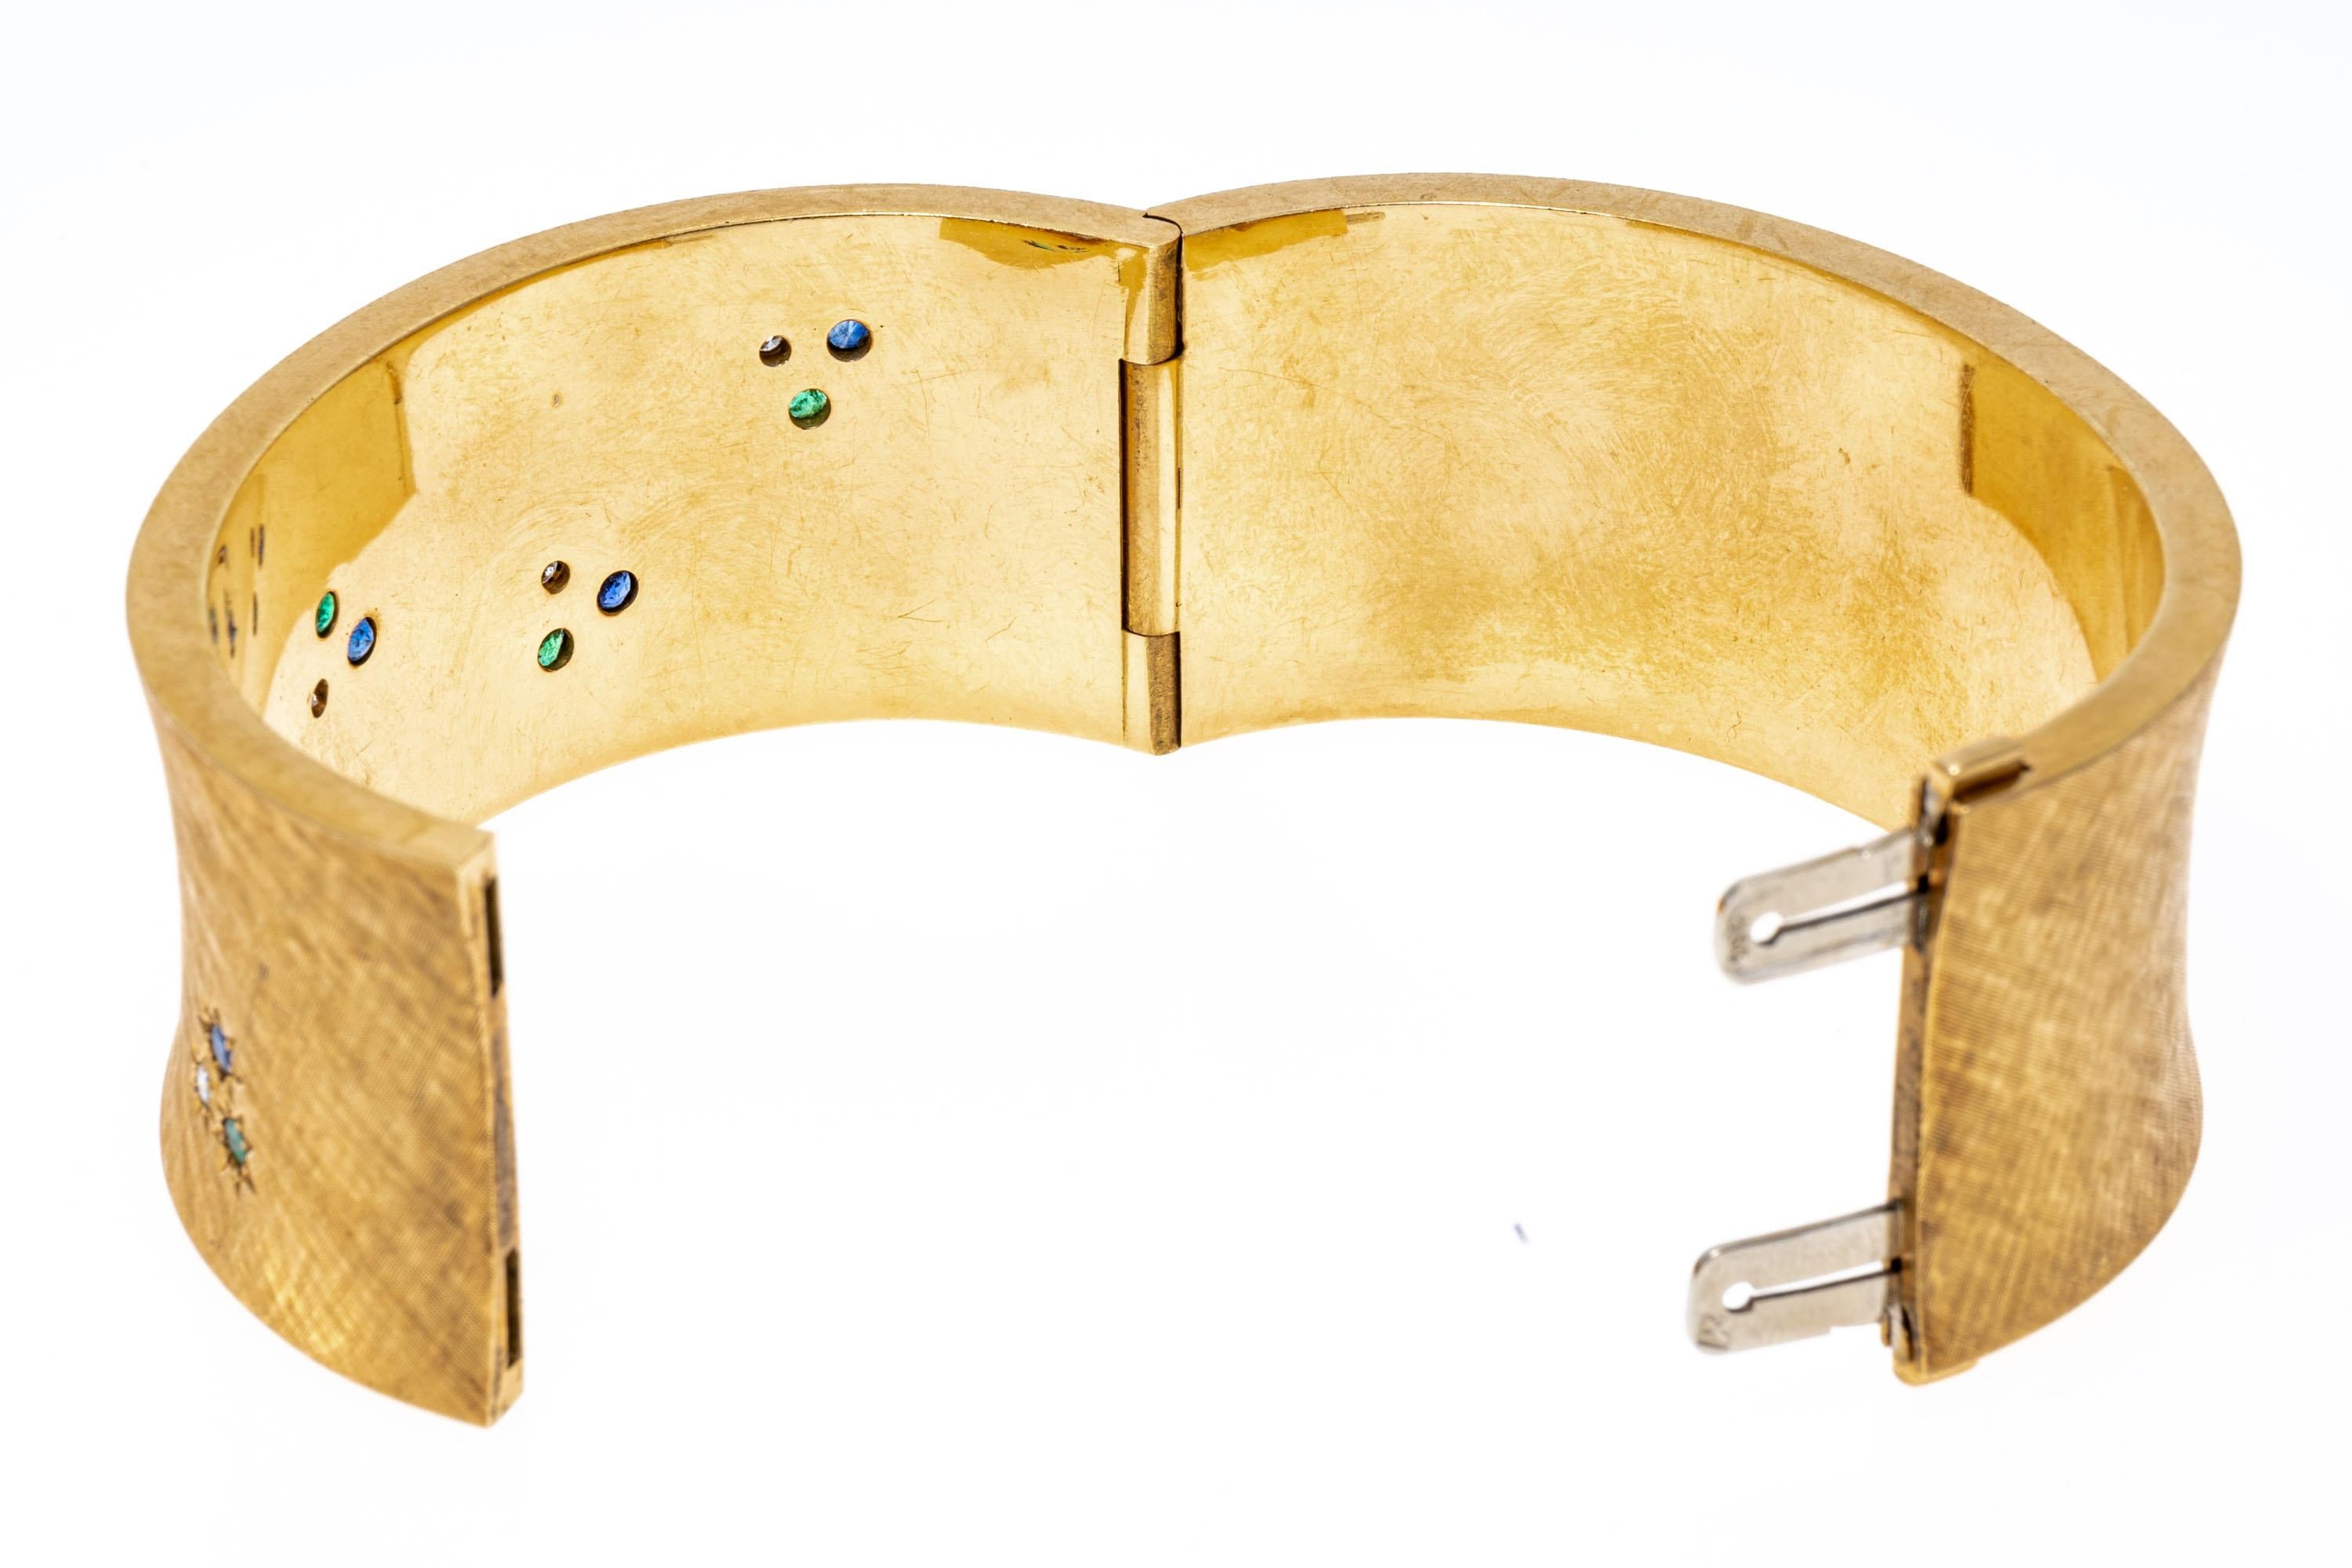 Fabriqué en or jaune 18 carats, ce large bracelet concave présente une douce finition brossée. Des émeraudes, des saphirs et des diamants de taille ronde sont sertis à fleur de la face du bracelet dans un cadre en forme de soleil. Les diamants ont